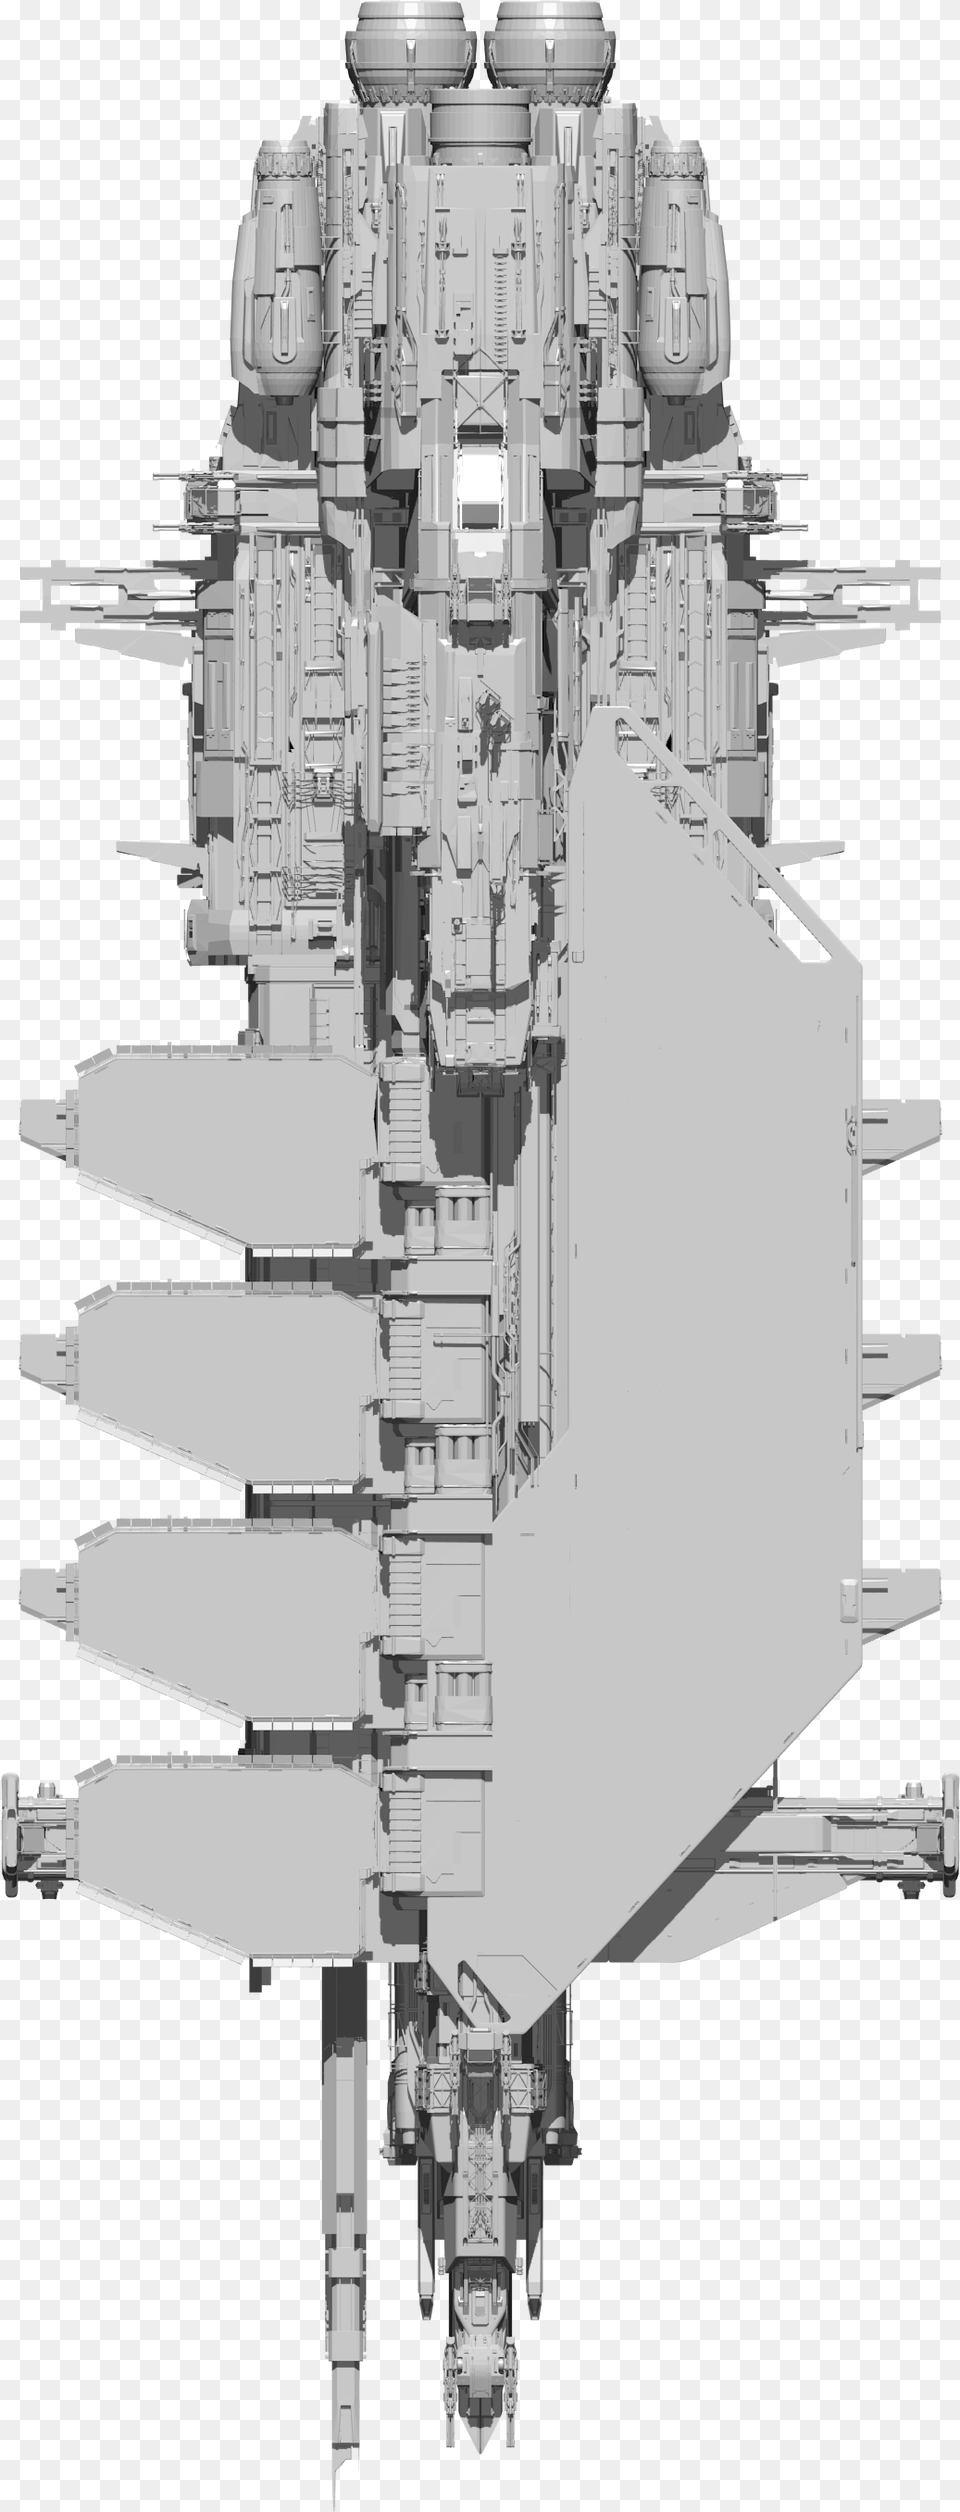 Kraken Vertical, Aircraft, Spaceship, Transportation, Vehicle Png Image